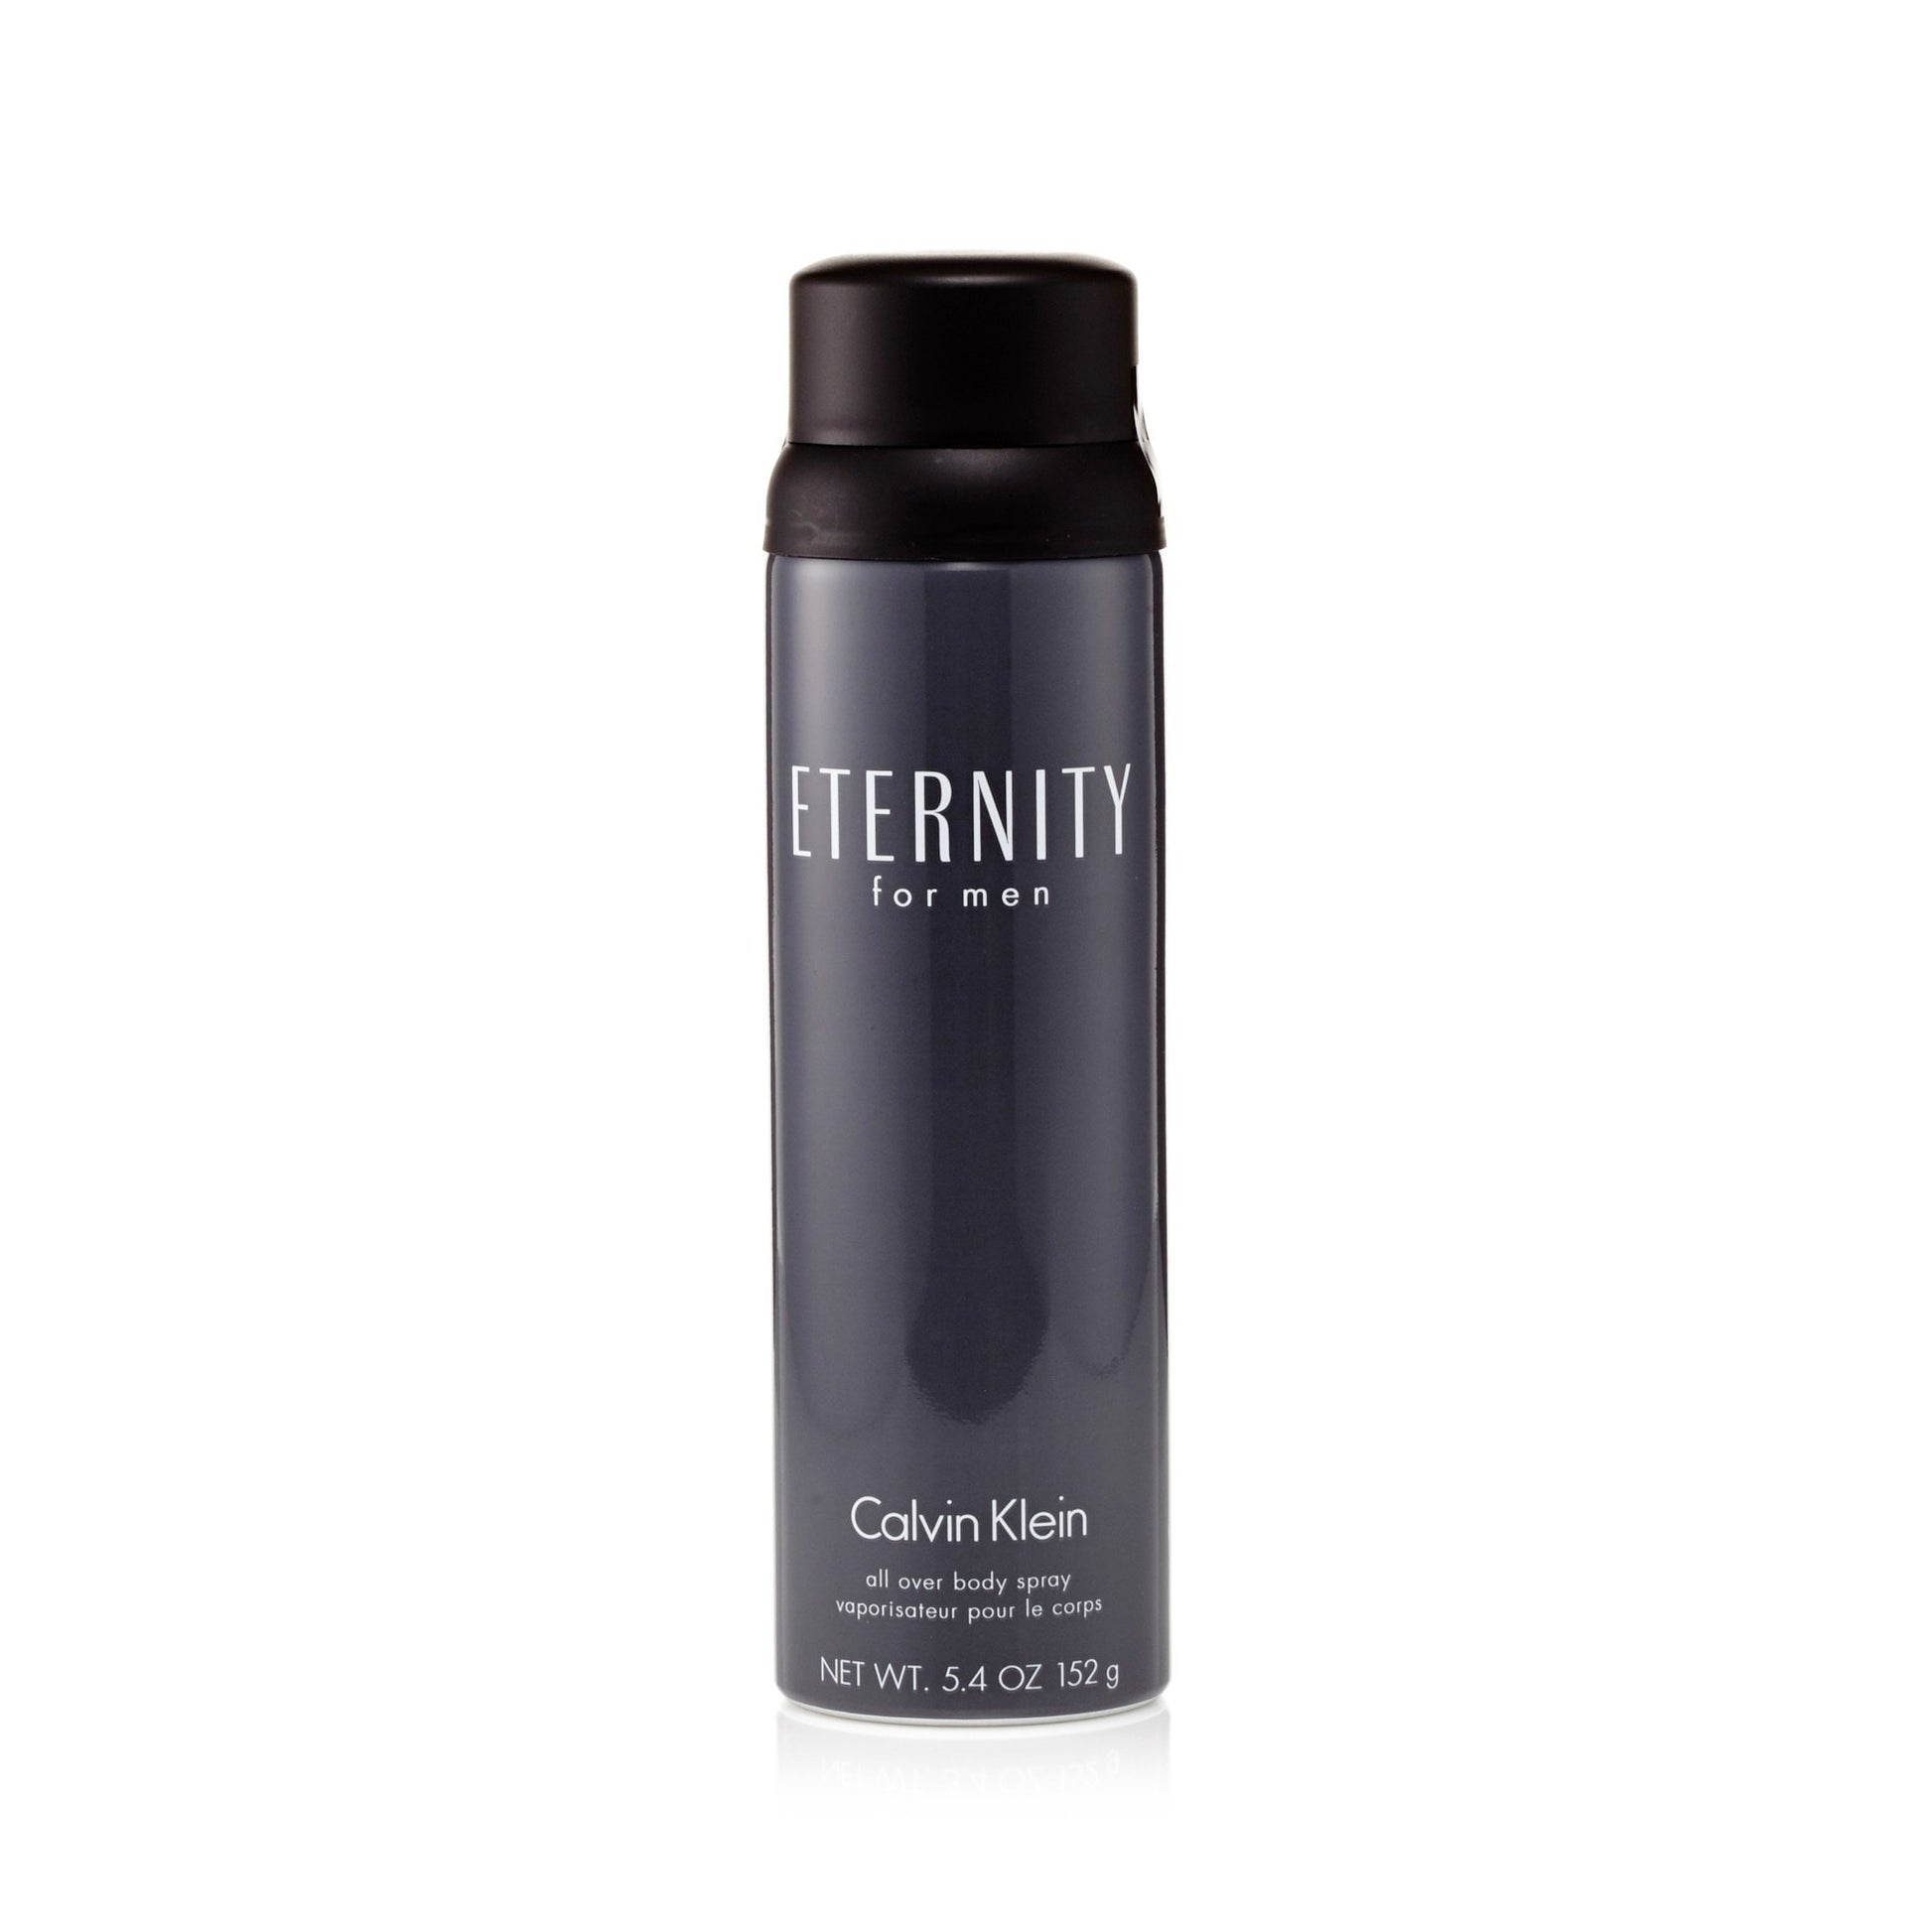 CK Eternity Body Spray for Men by Calvin Klein 5.4 oz. Click to open in modal